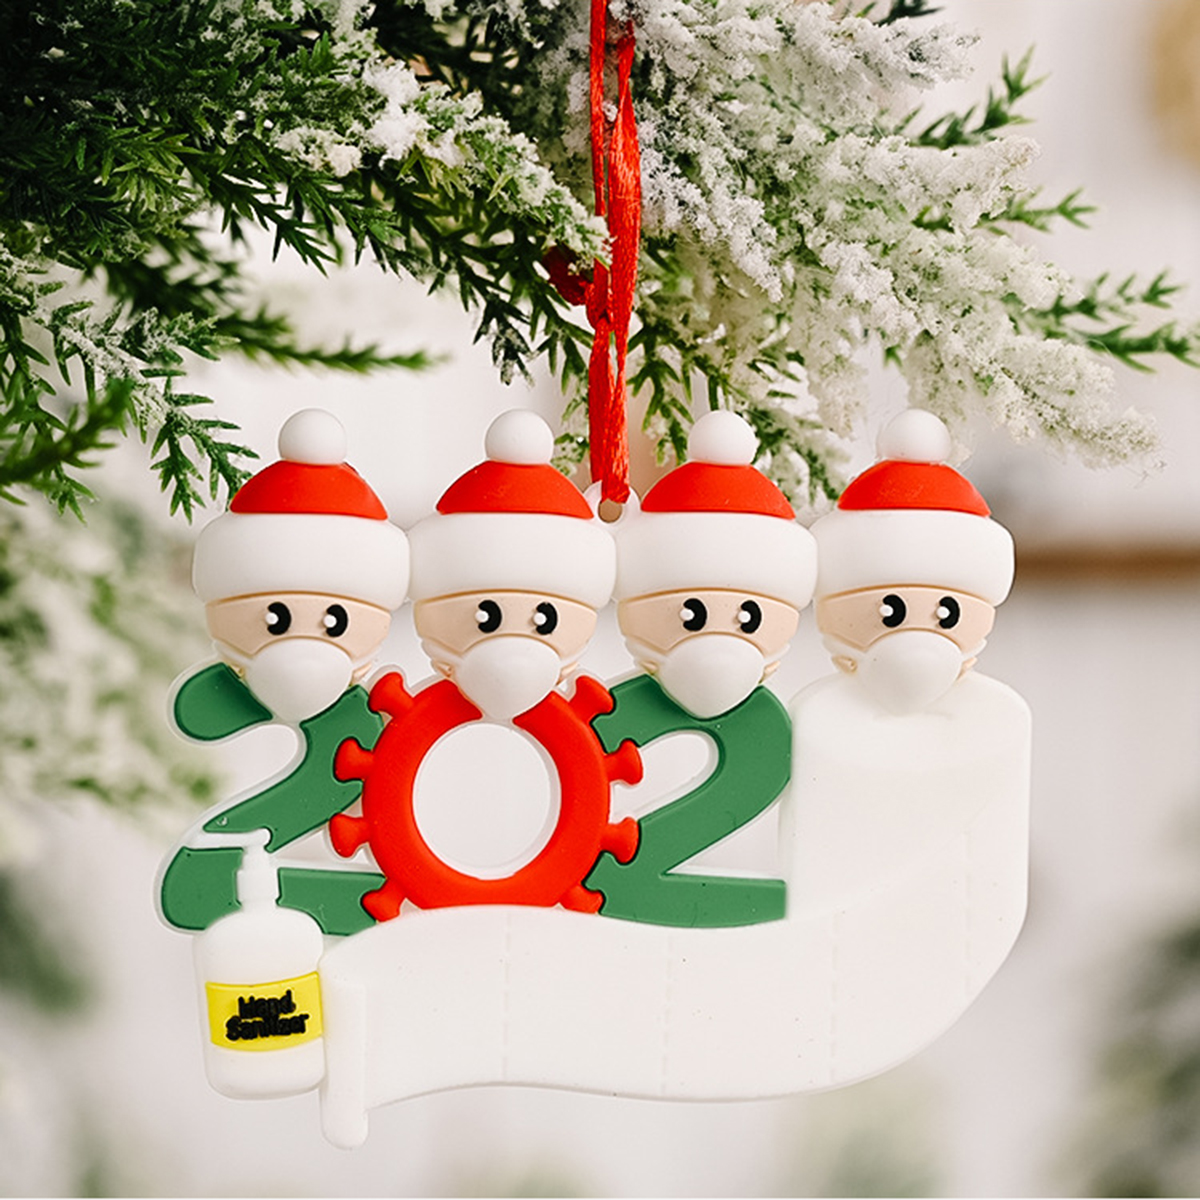 Mask-Santa-Snowman-Ornament-DIY-Name-Greetings-Christmas-Tree-Ornament-for-Christmas-Tree-Decoration-1786417-7